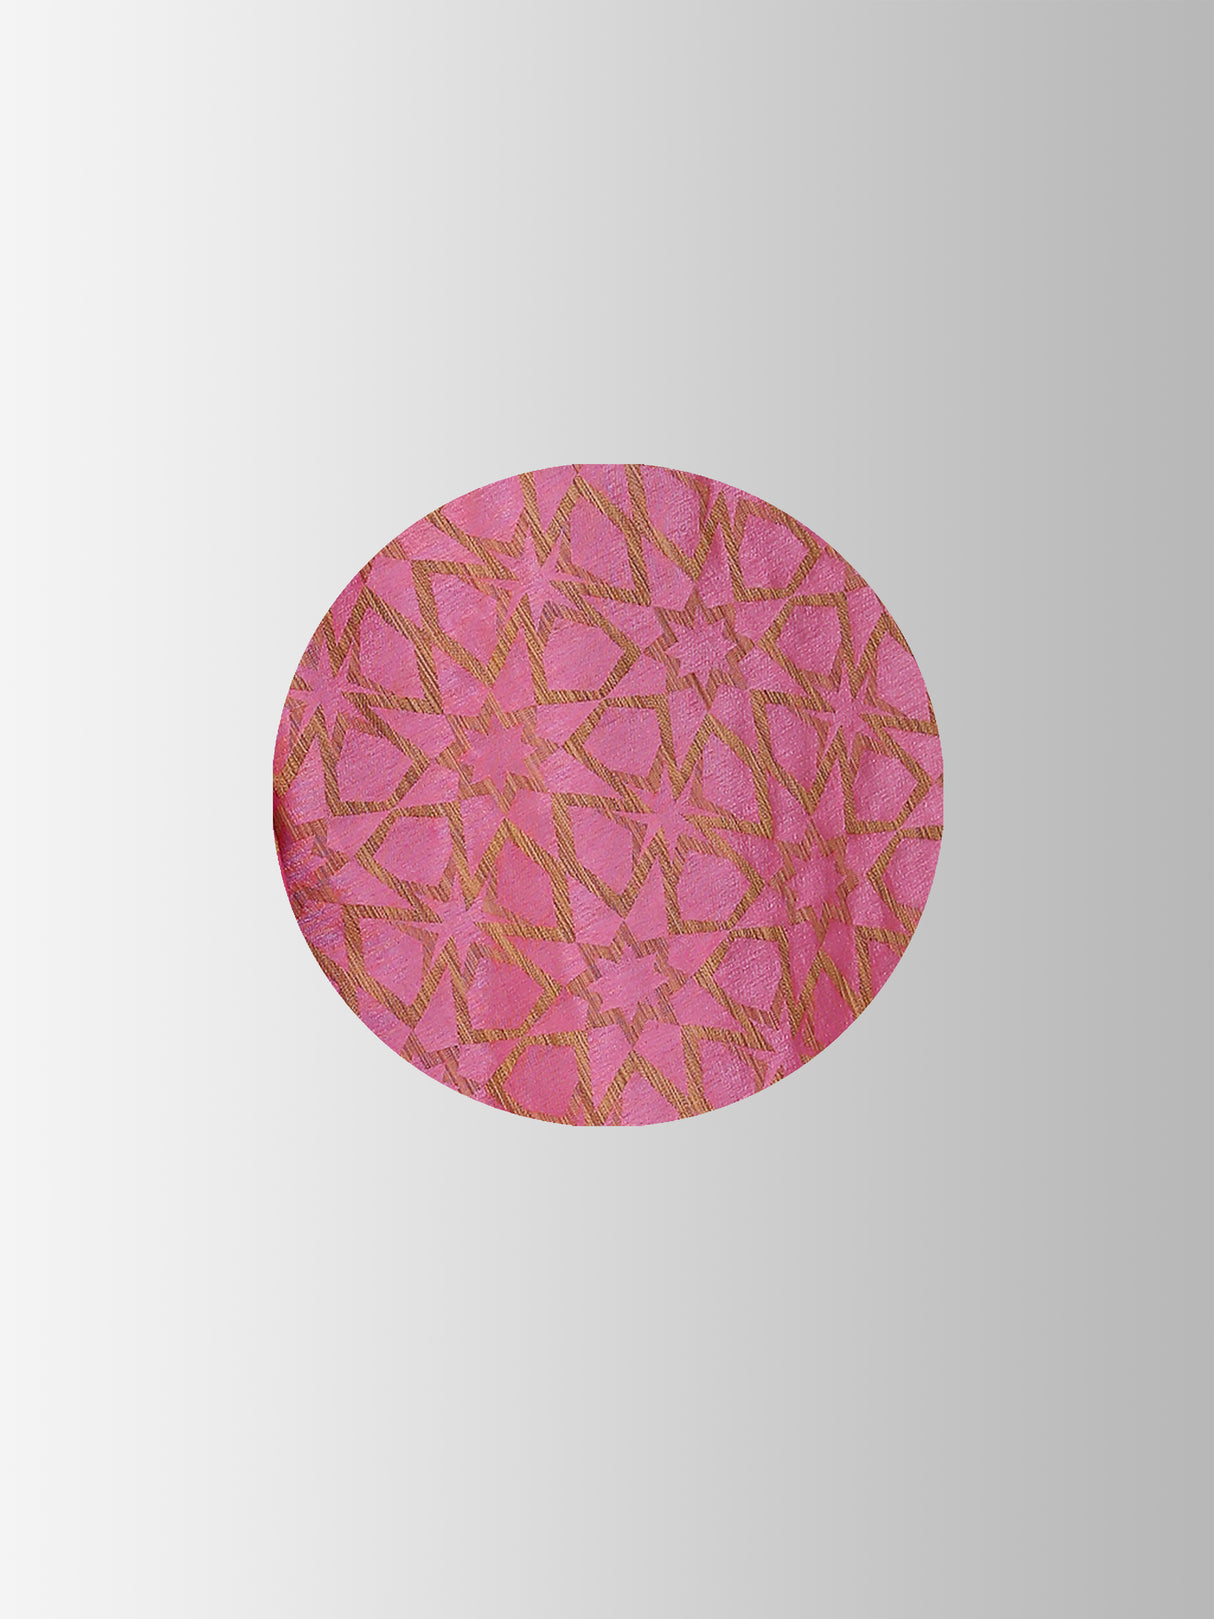 Mimosa Womens Art Silk Saree Patola Pink Color